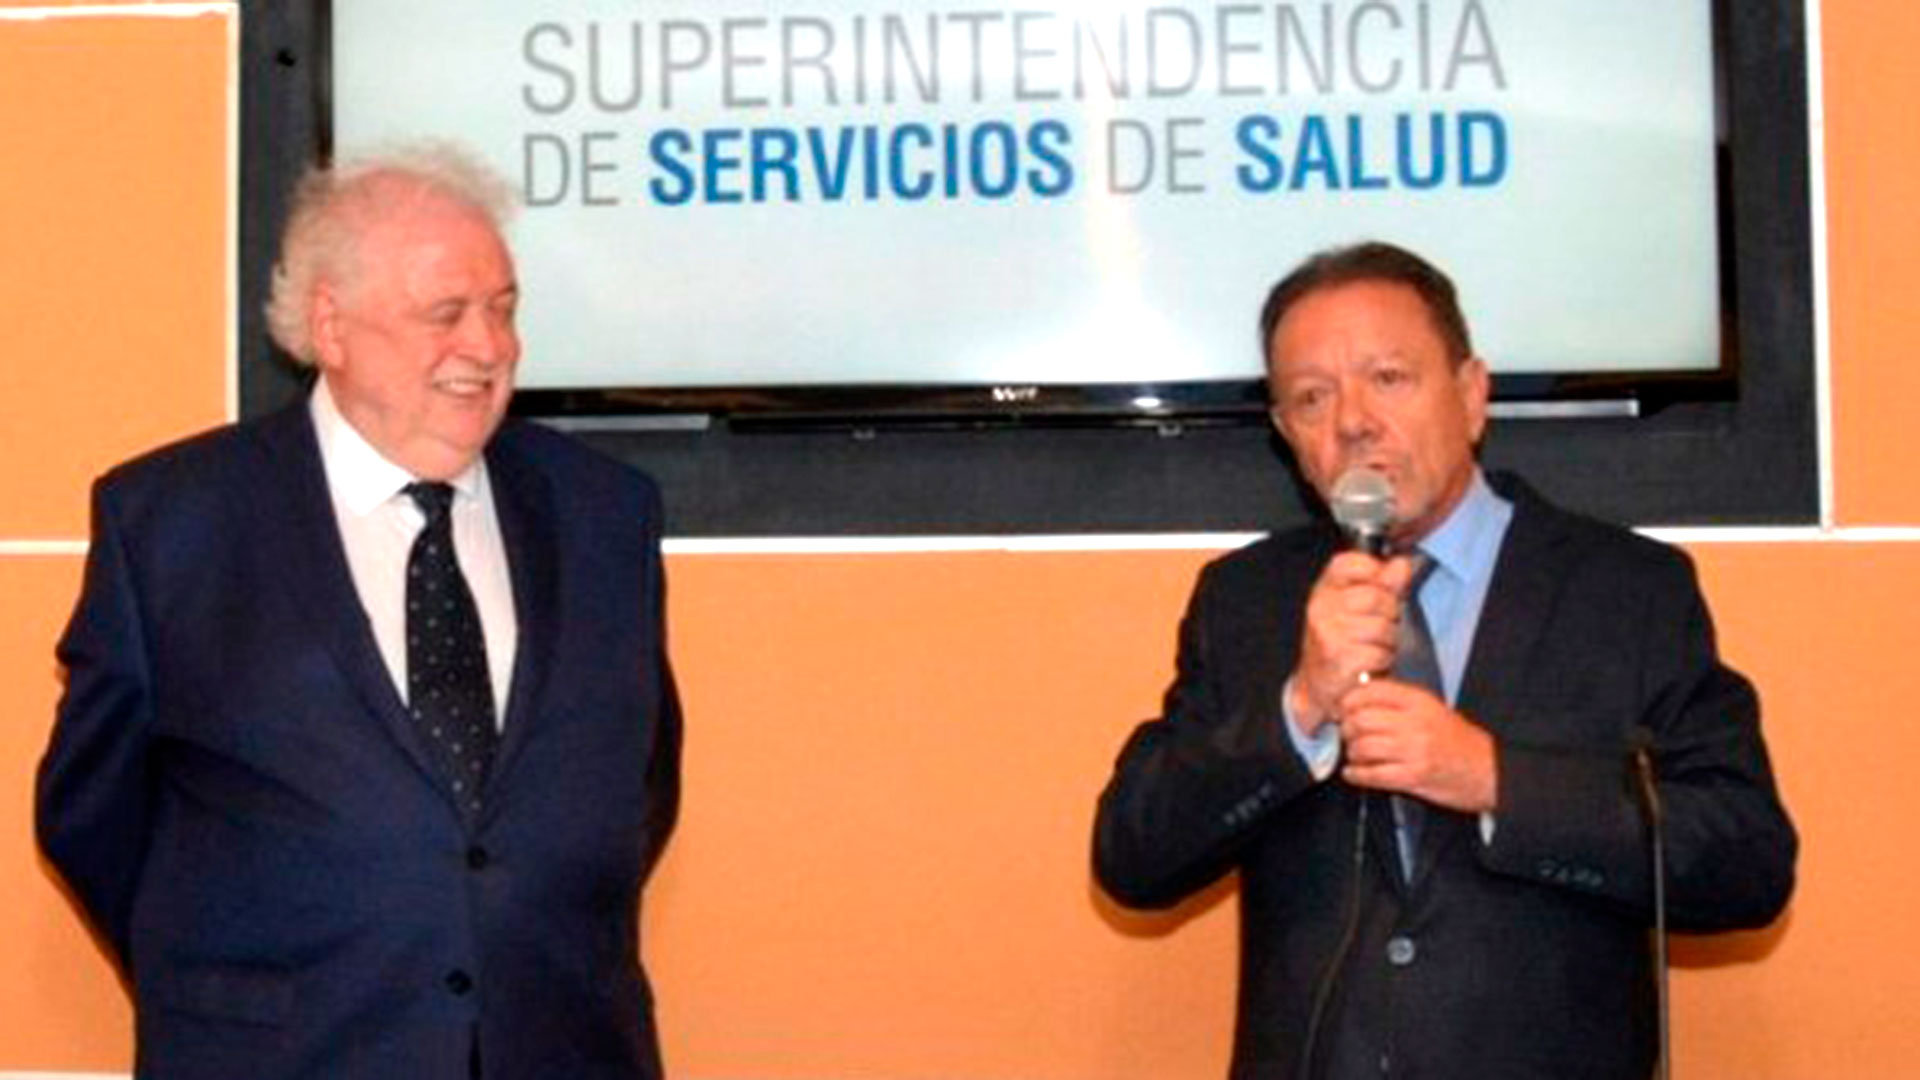 El ministro Ginés González García y el superintendente de Servicios de Salud, Eugenio Zanarini